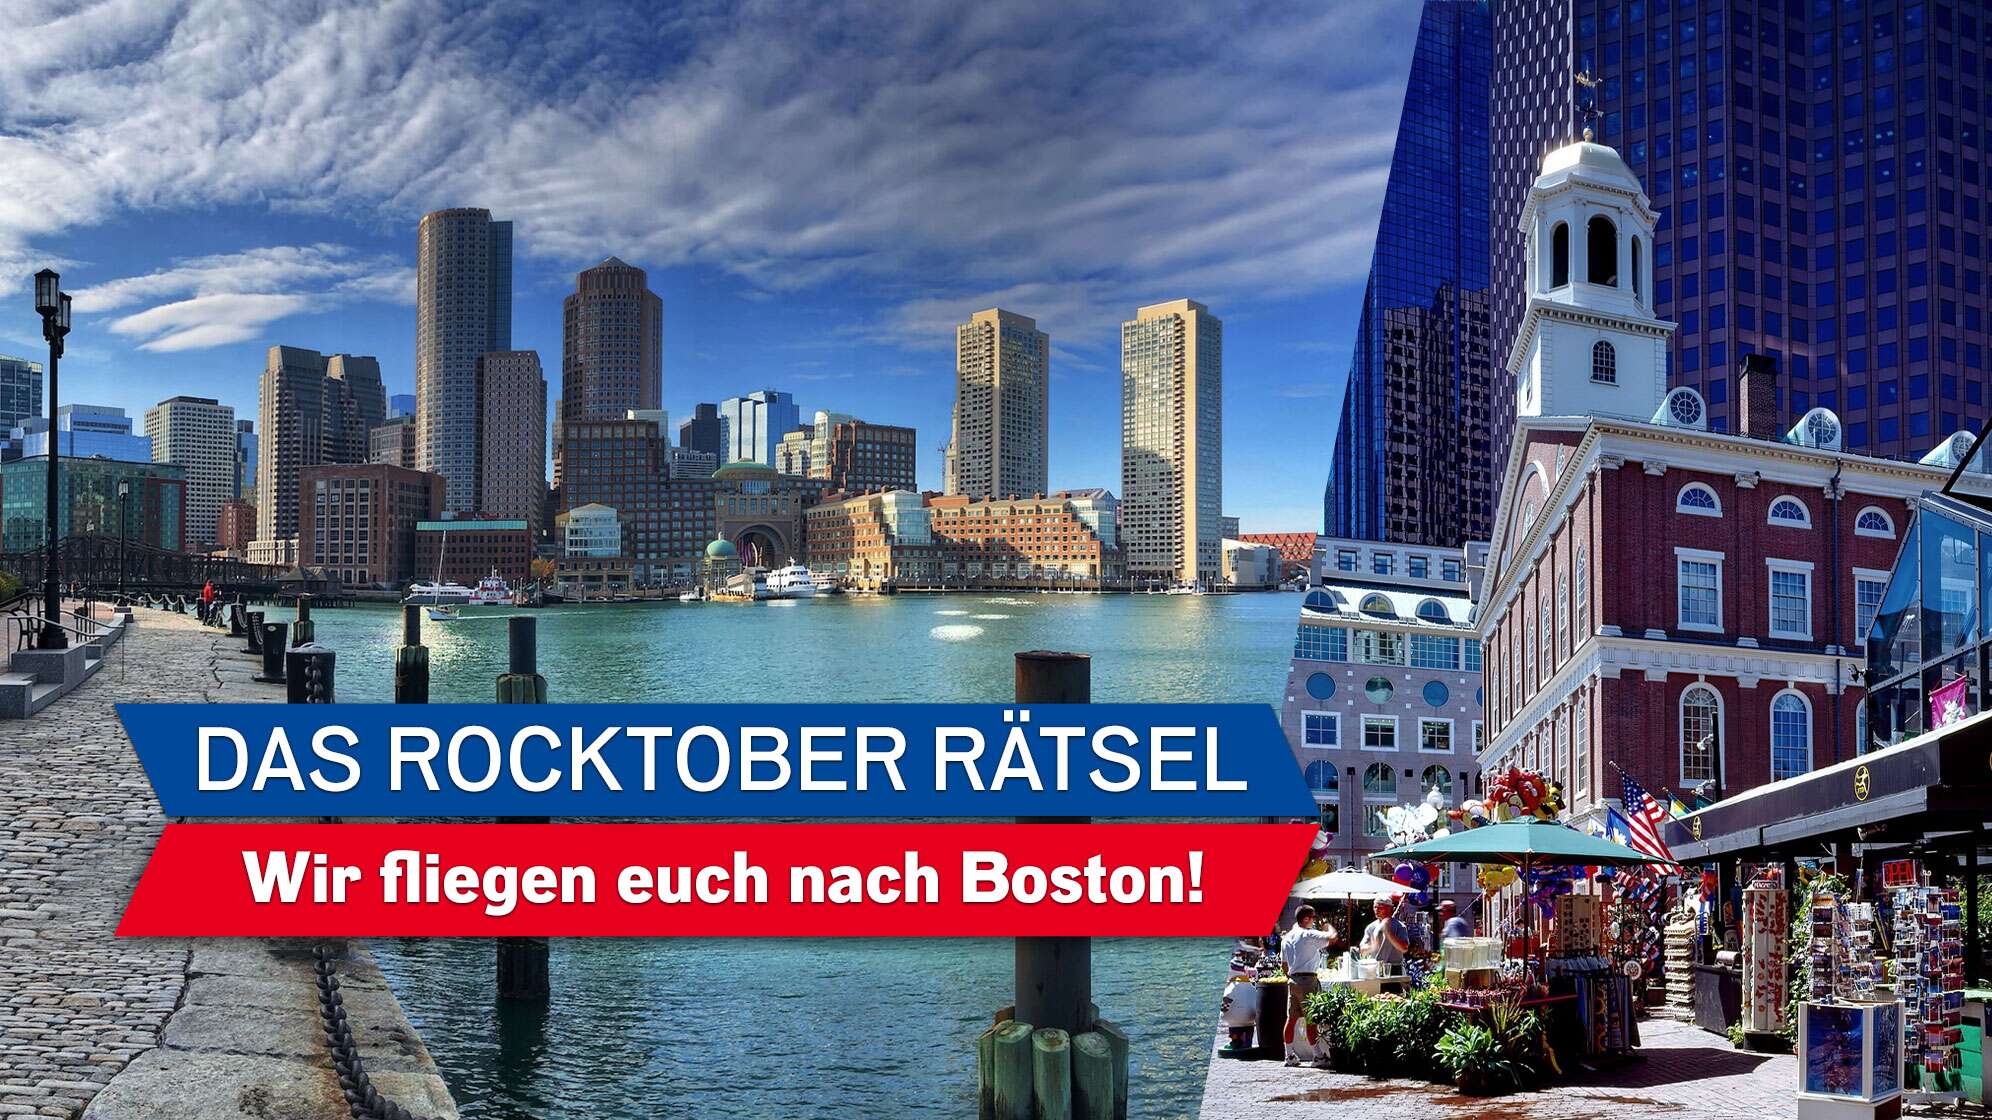 Bild von der Skyline Bostons, Text "Das ROCKTober Rätsel - wir fliegen euch nach Boston!"